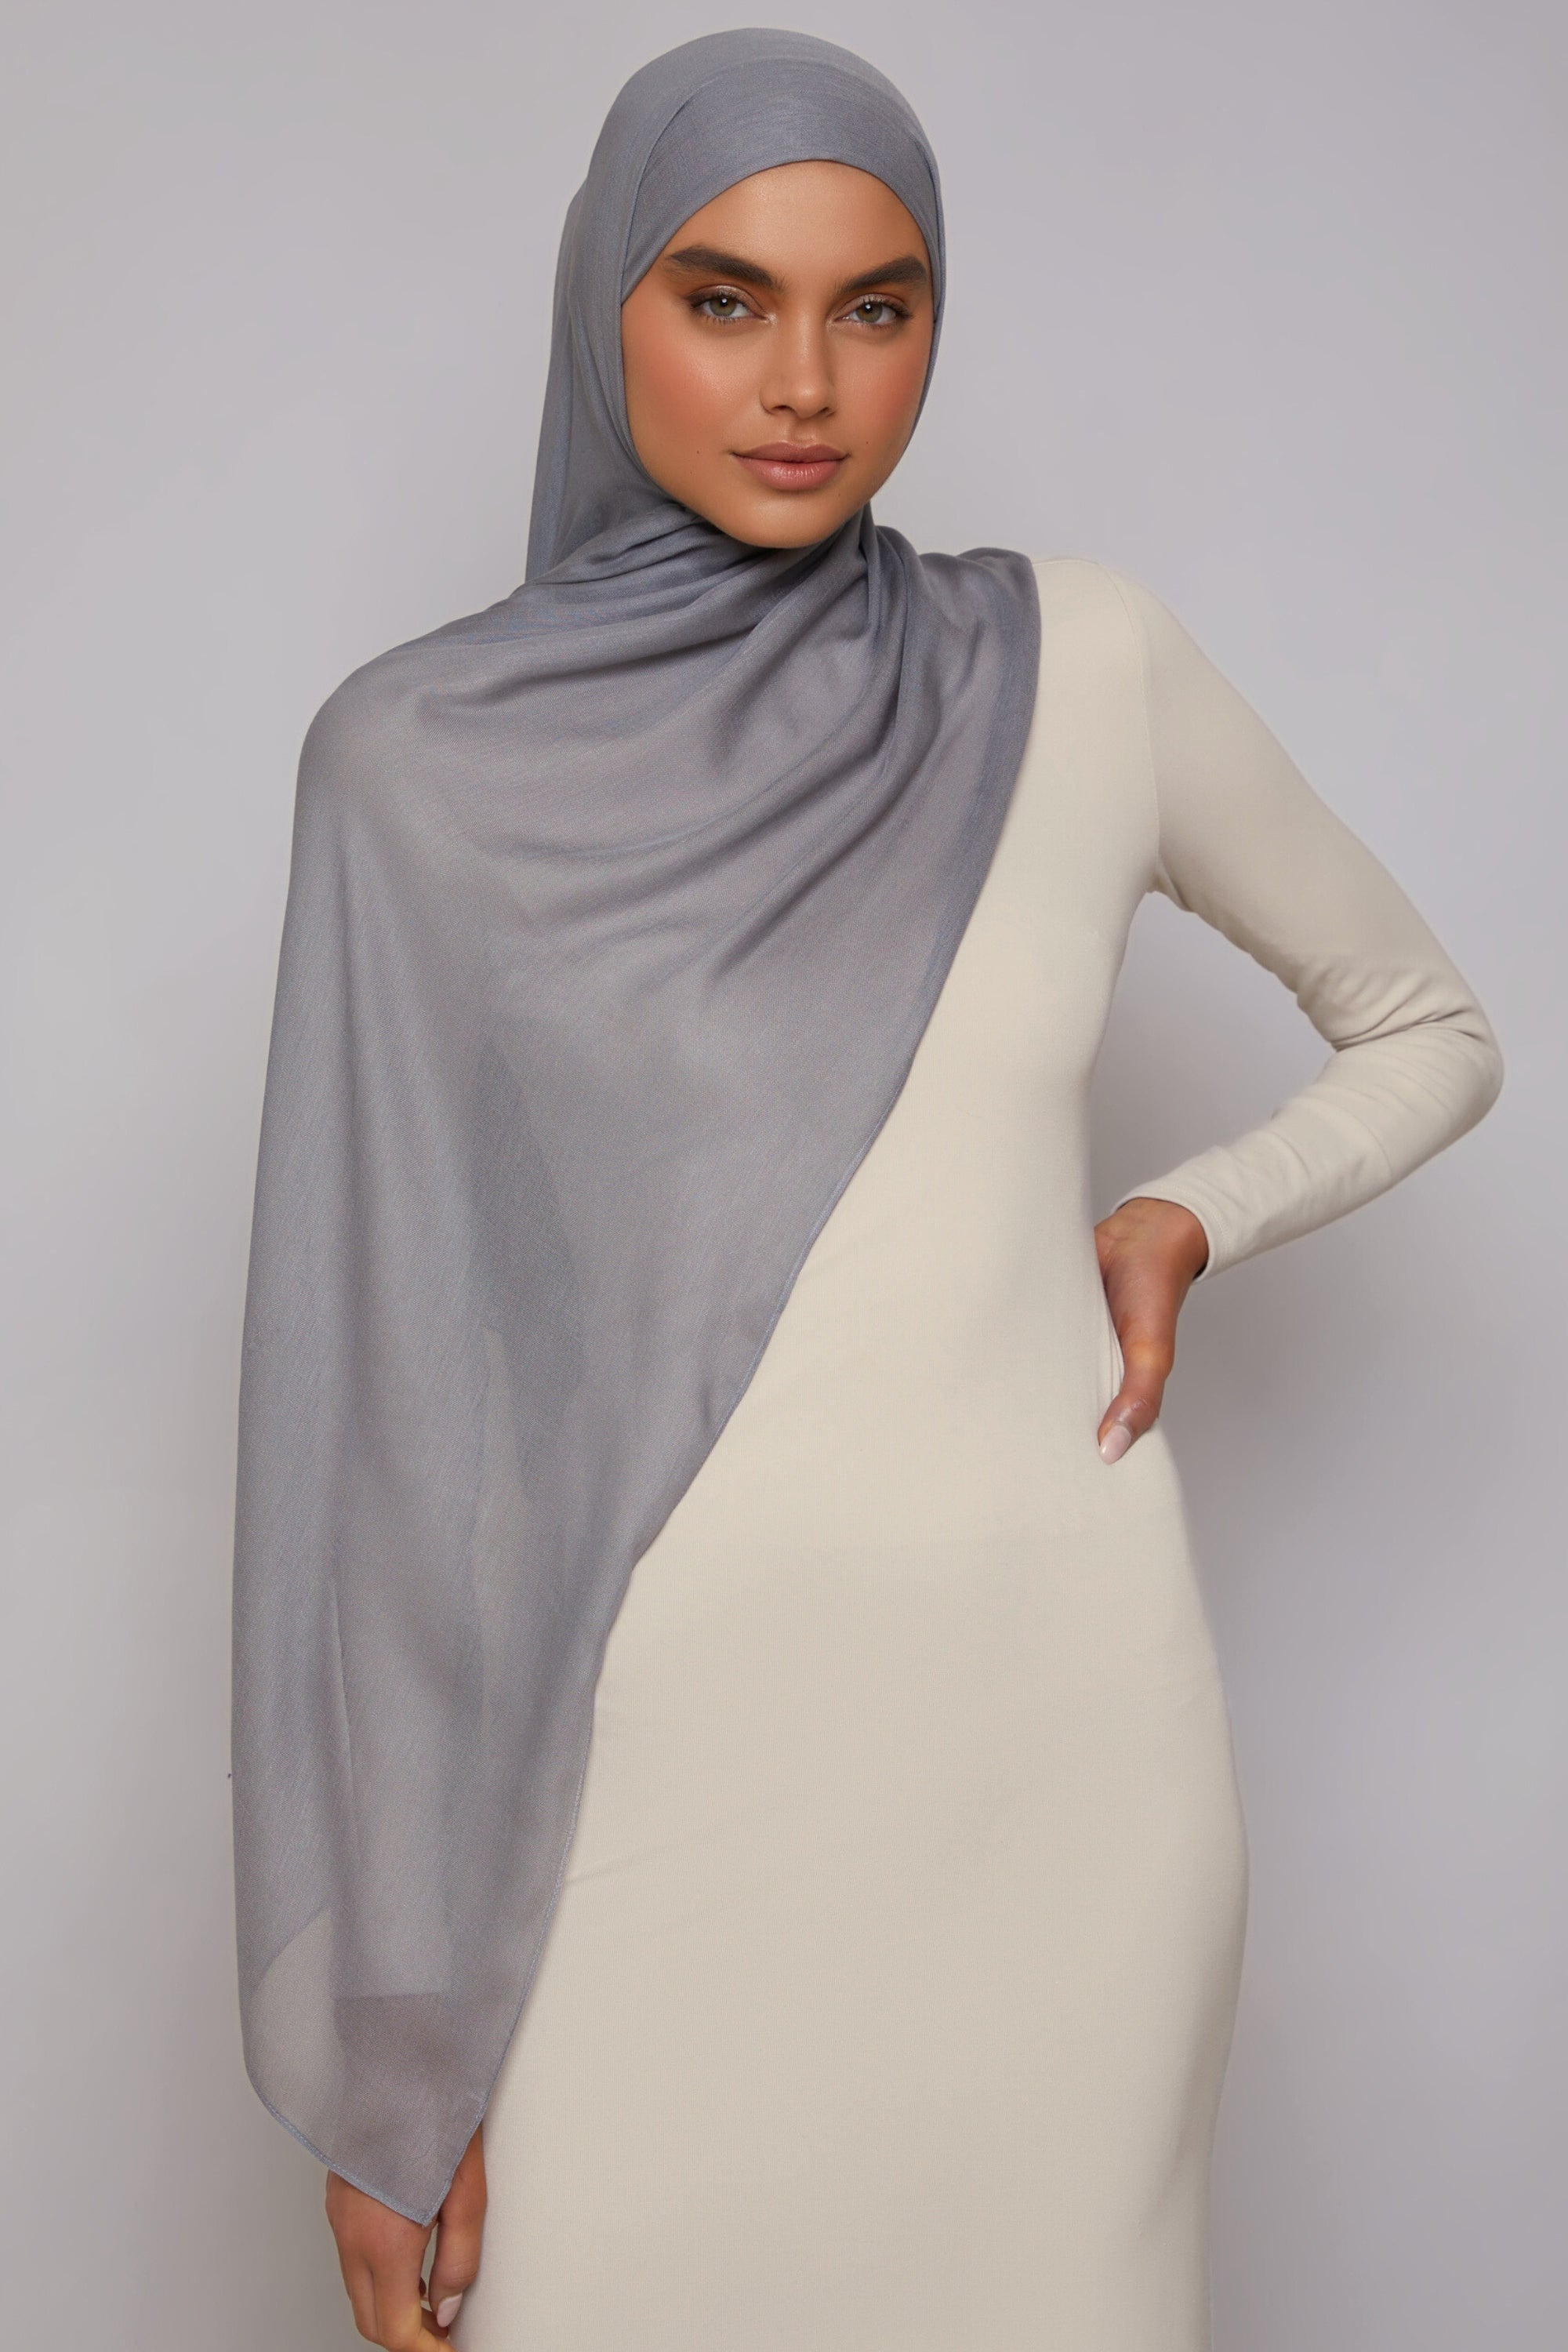 Modal Hijab - Mist Veiled 